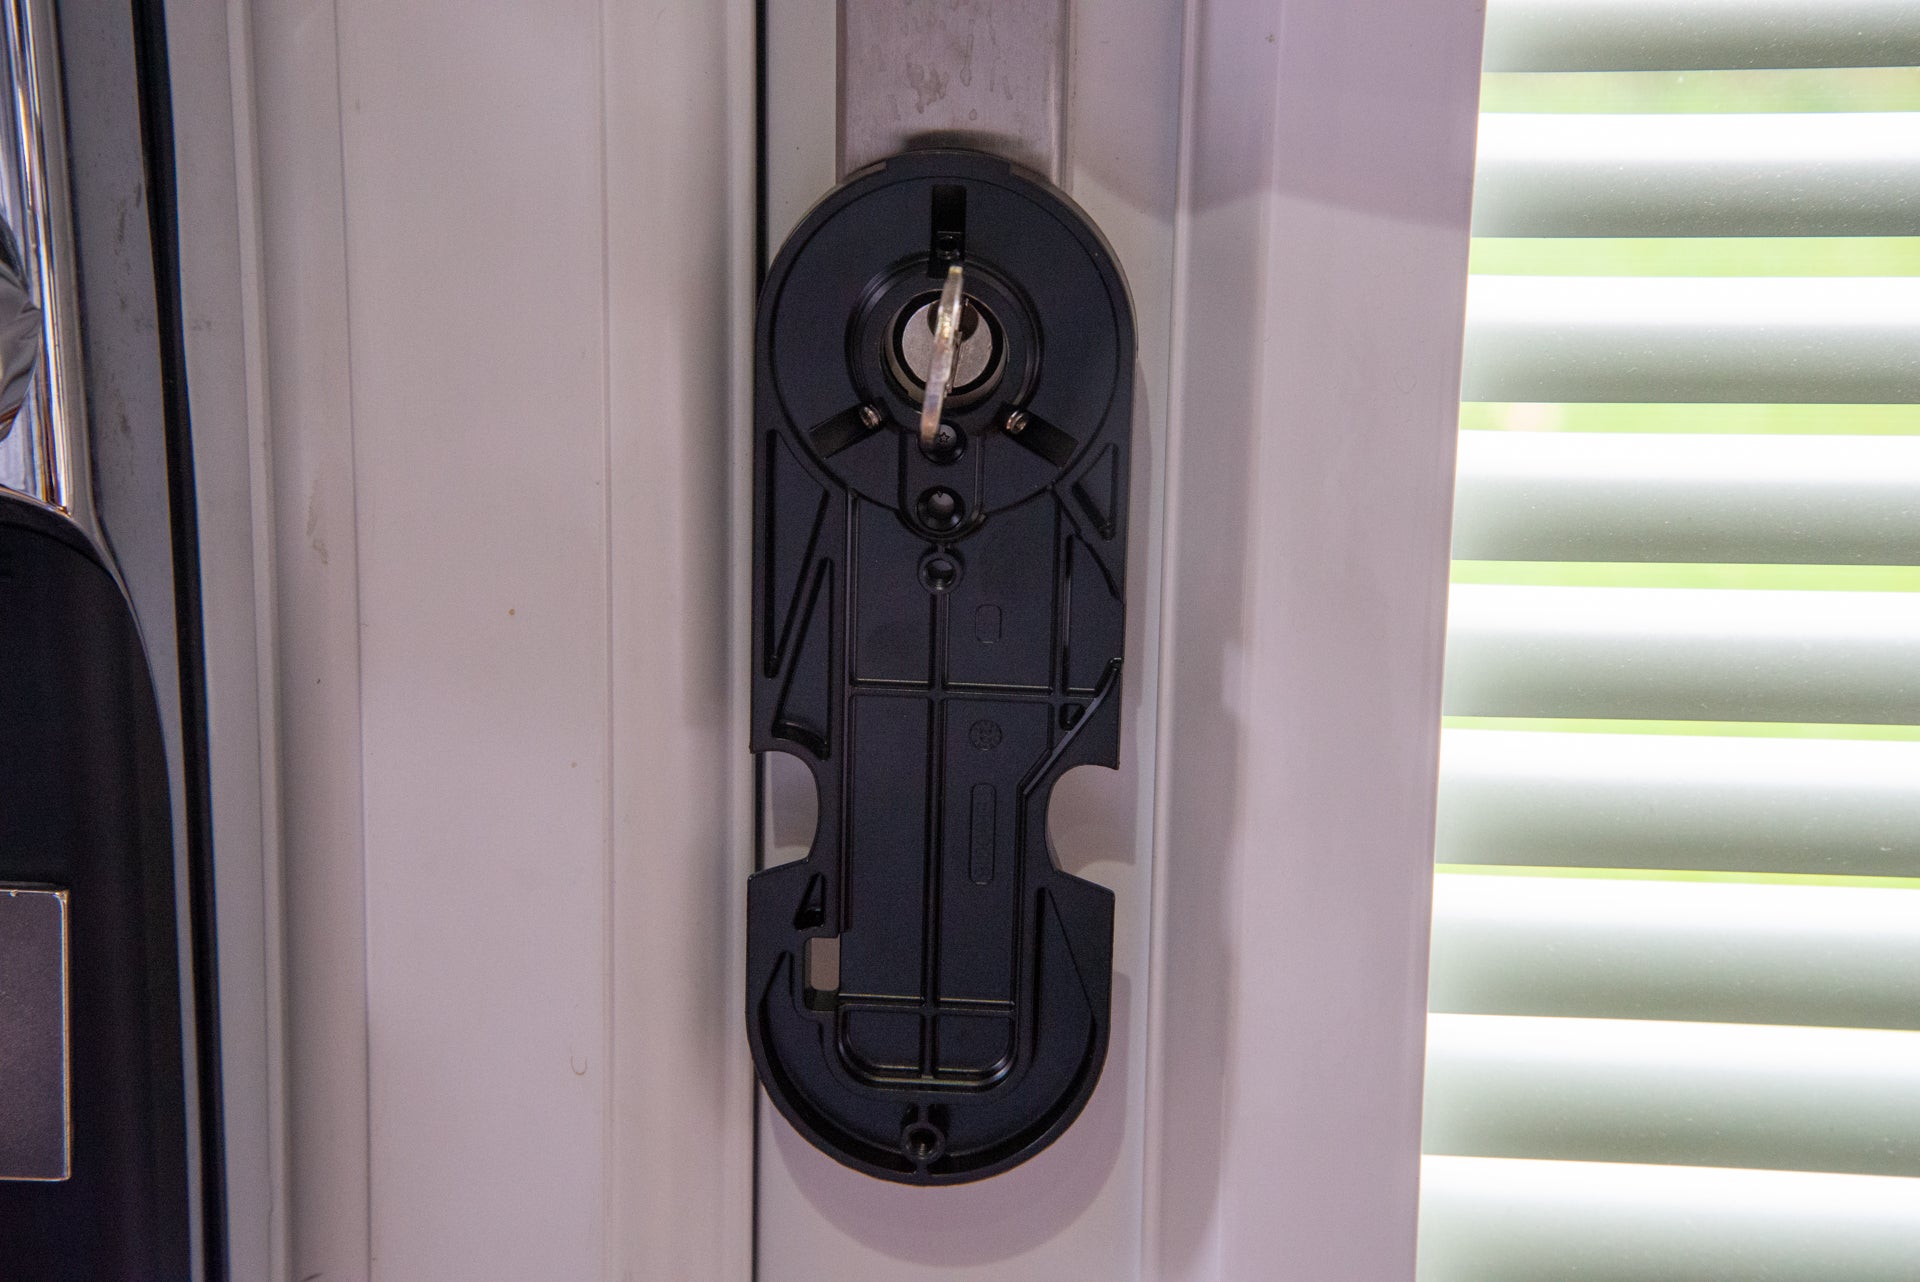 A black Yale linus smart door lock fixed on the door